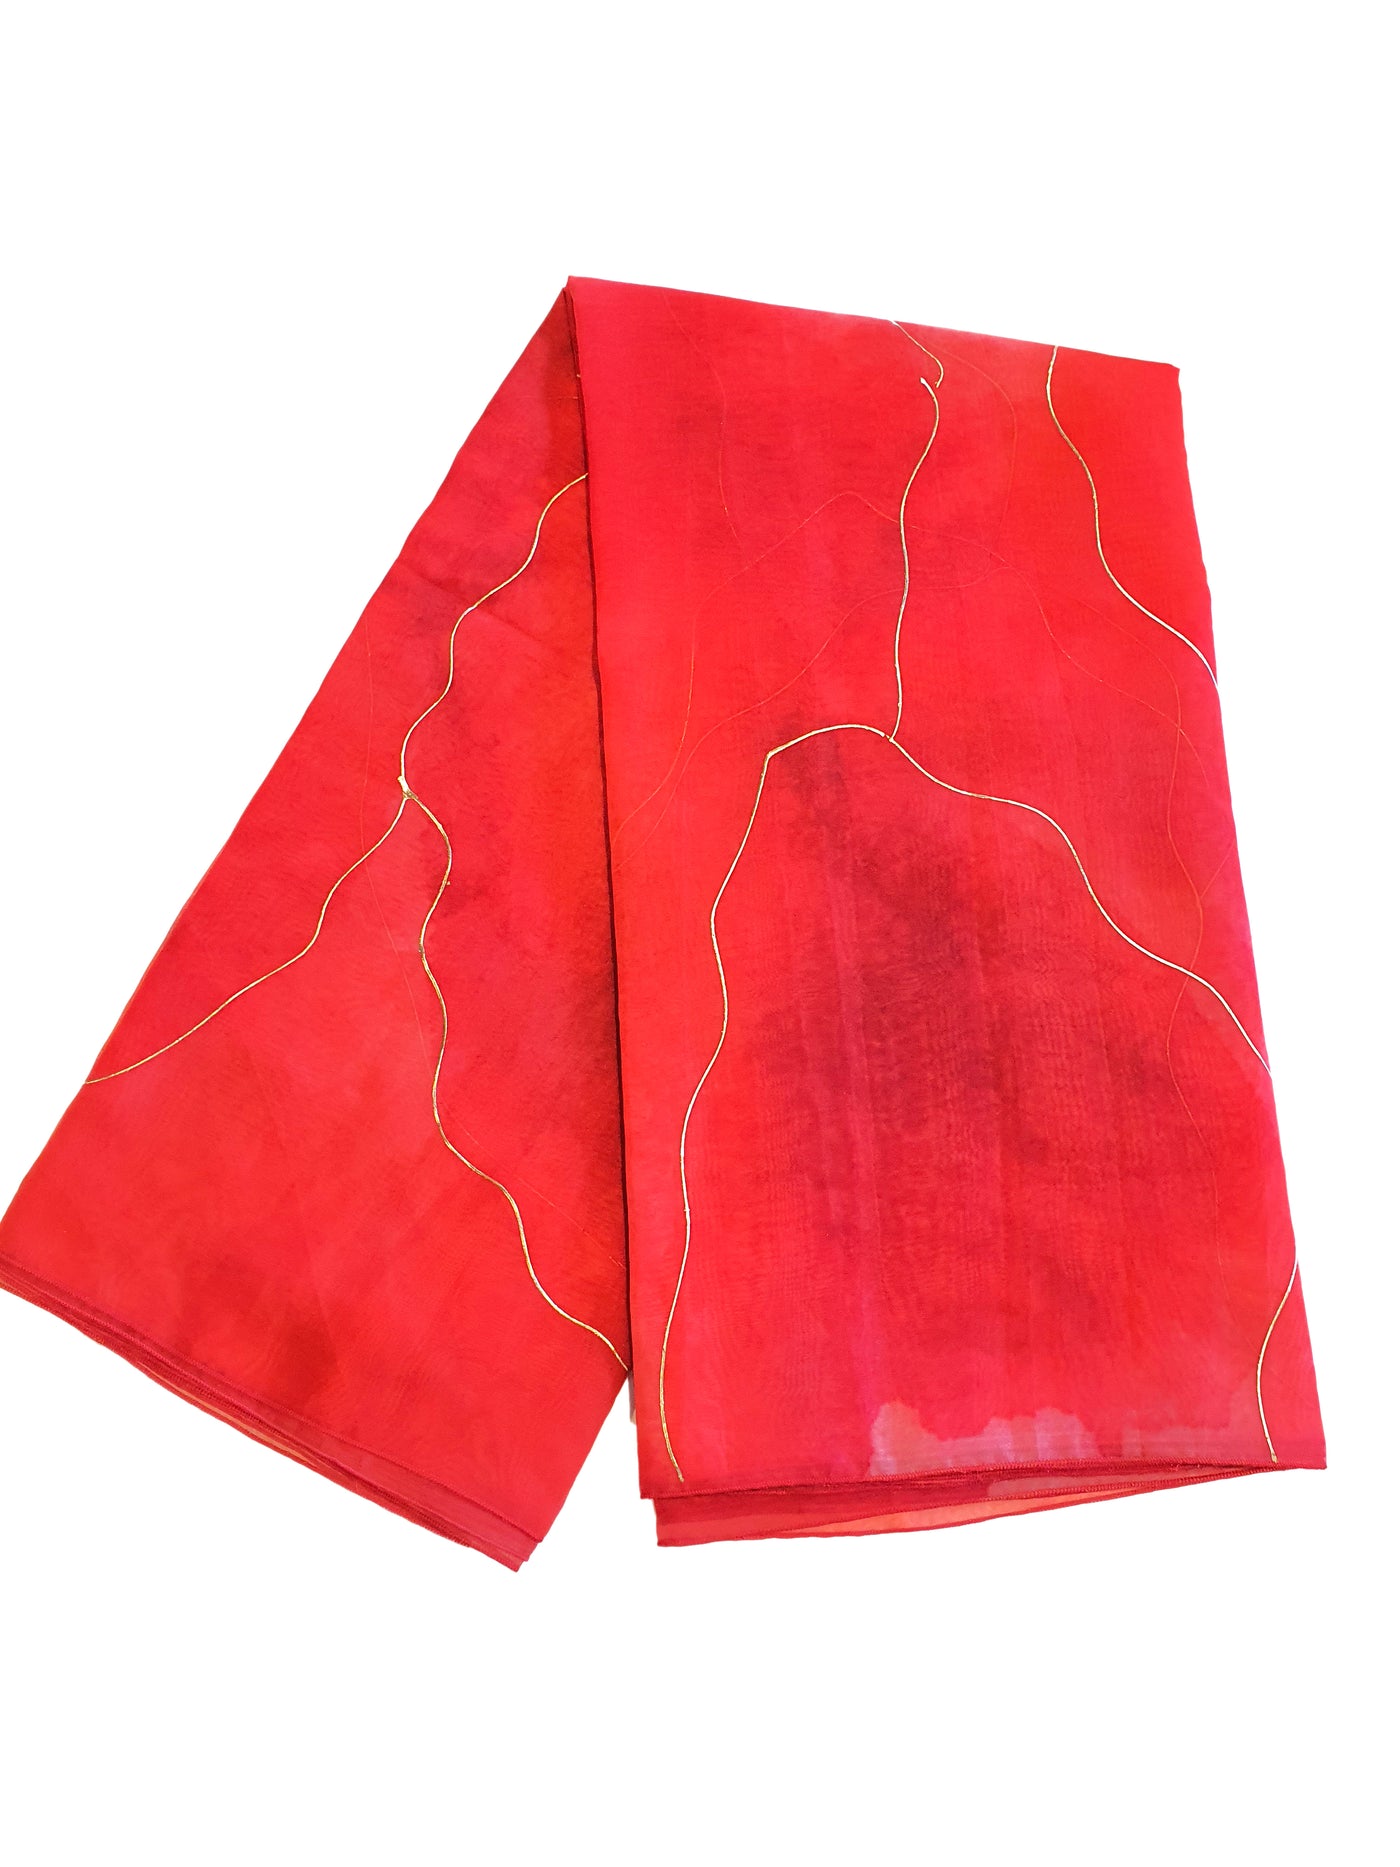 Red Organza Printed Saree